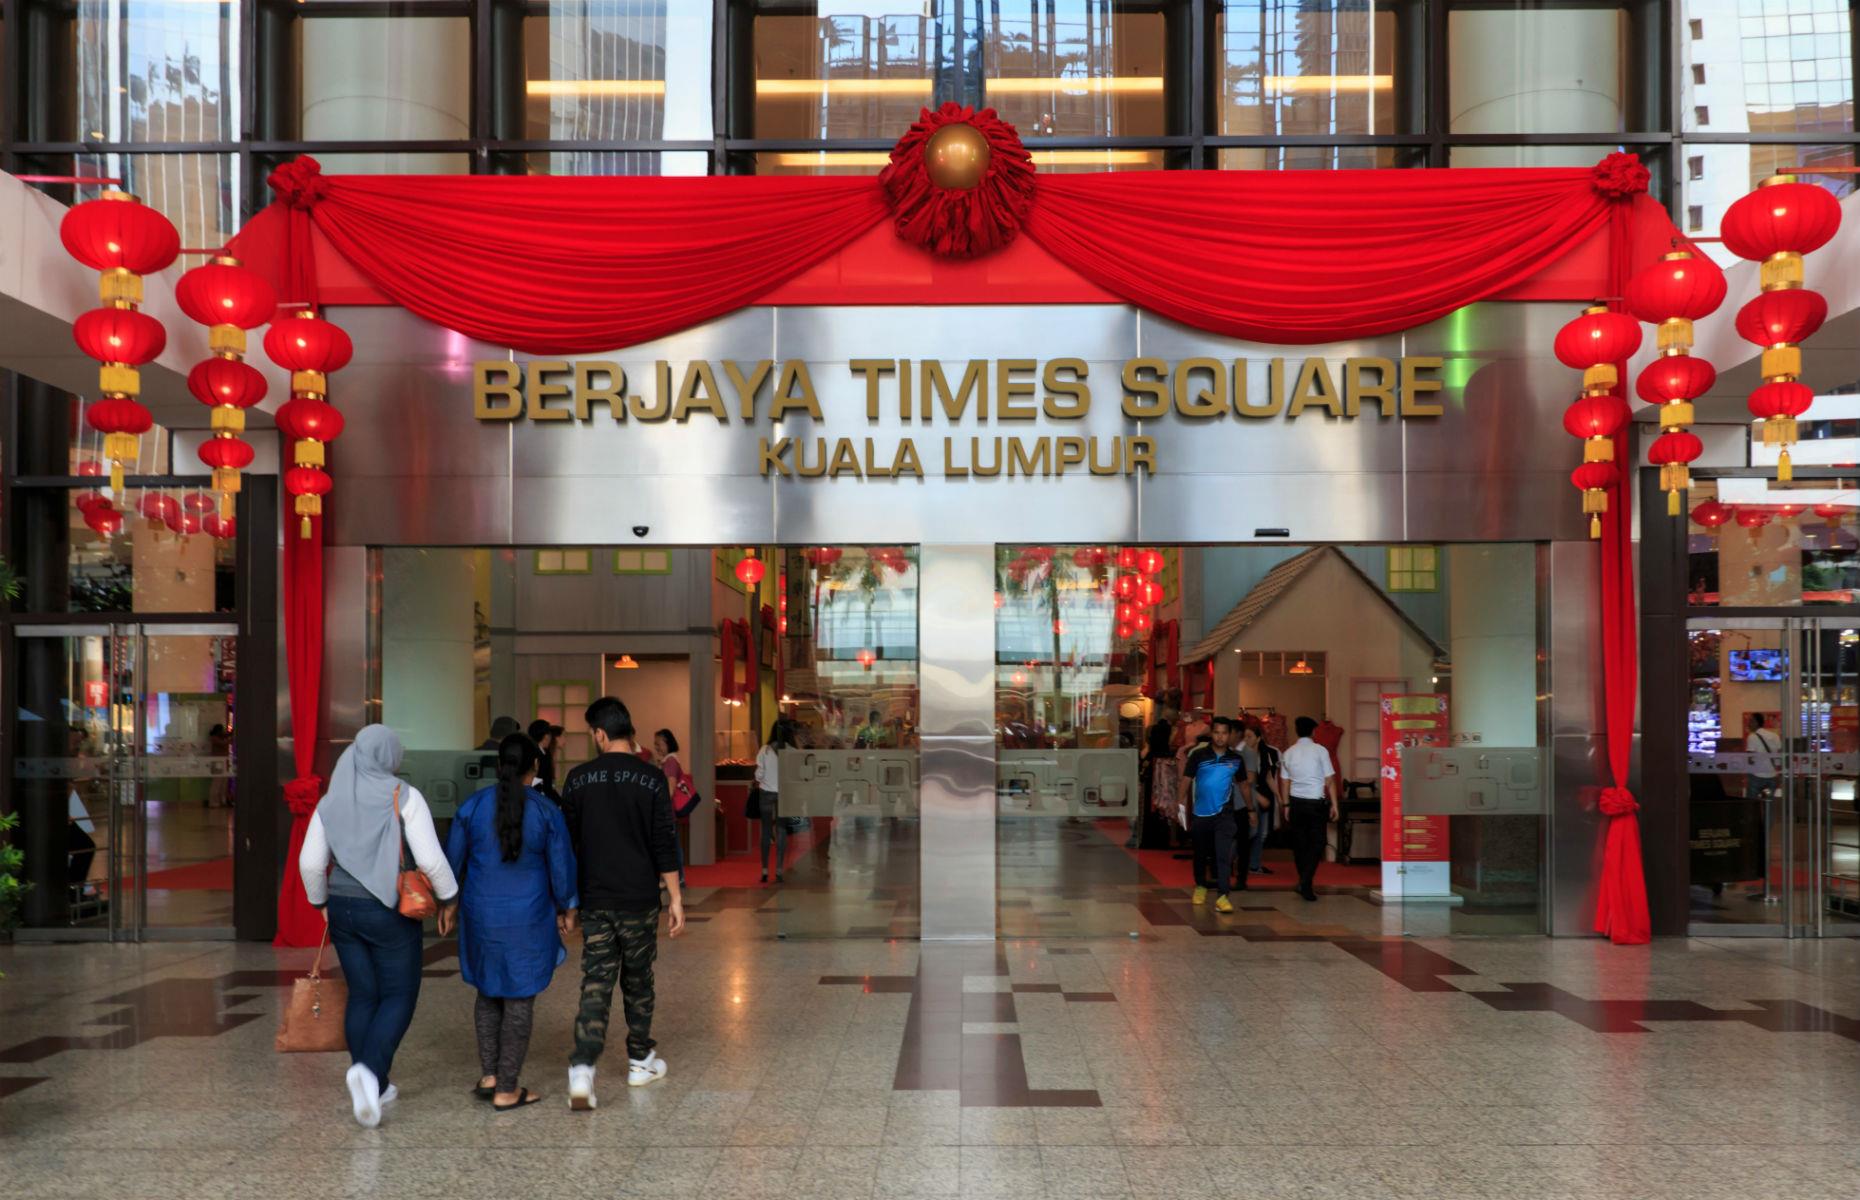 Berjaya Times Square, Malaysia: $417 million (£340m)